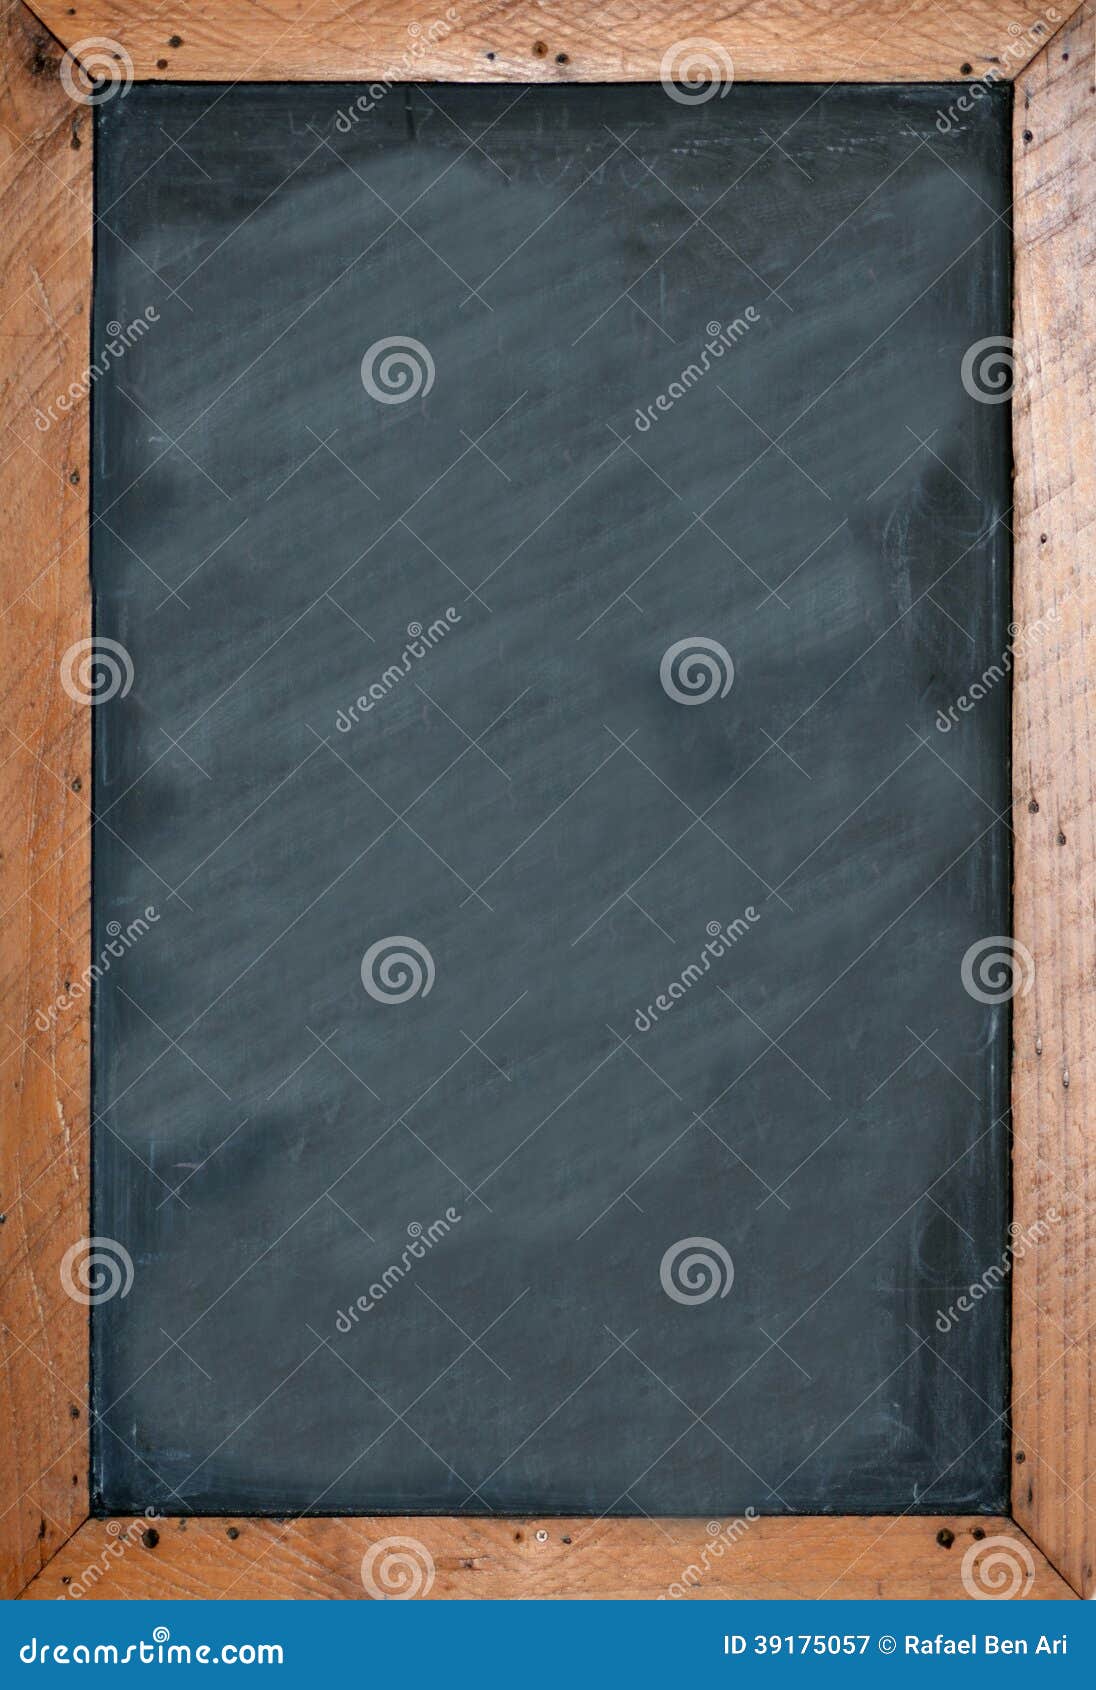 blank chalkboard